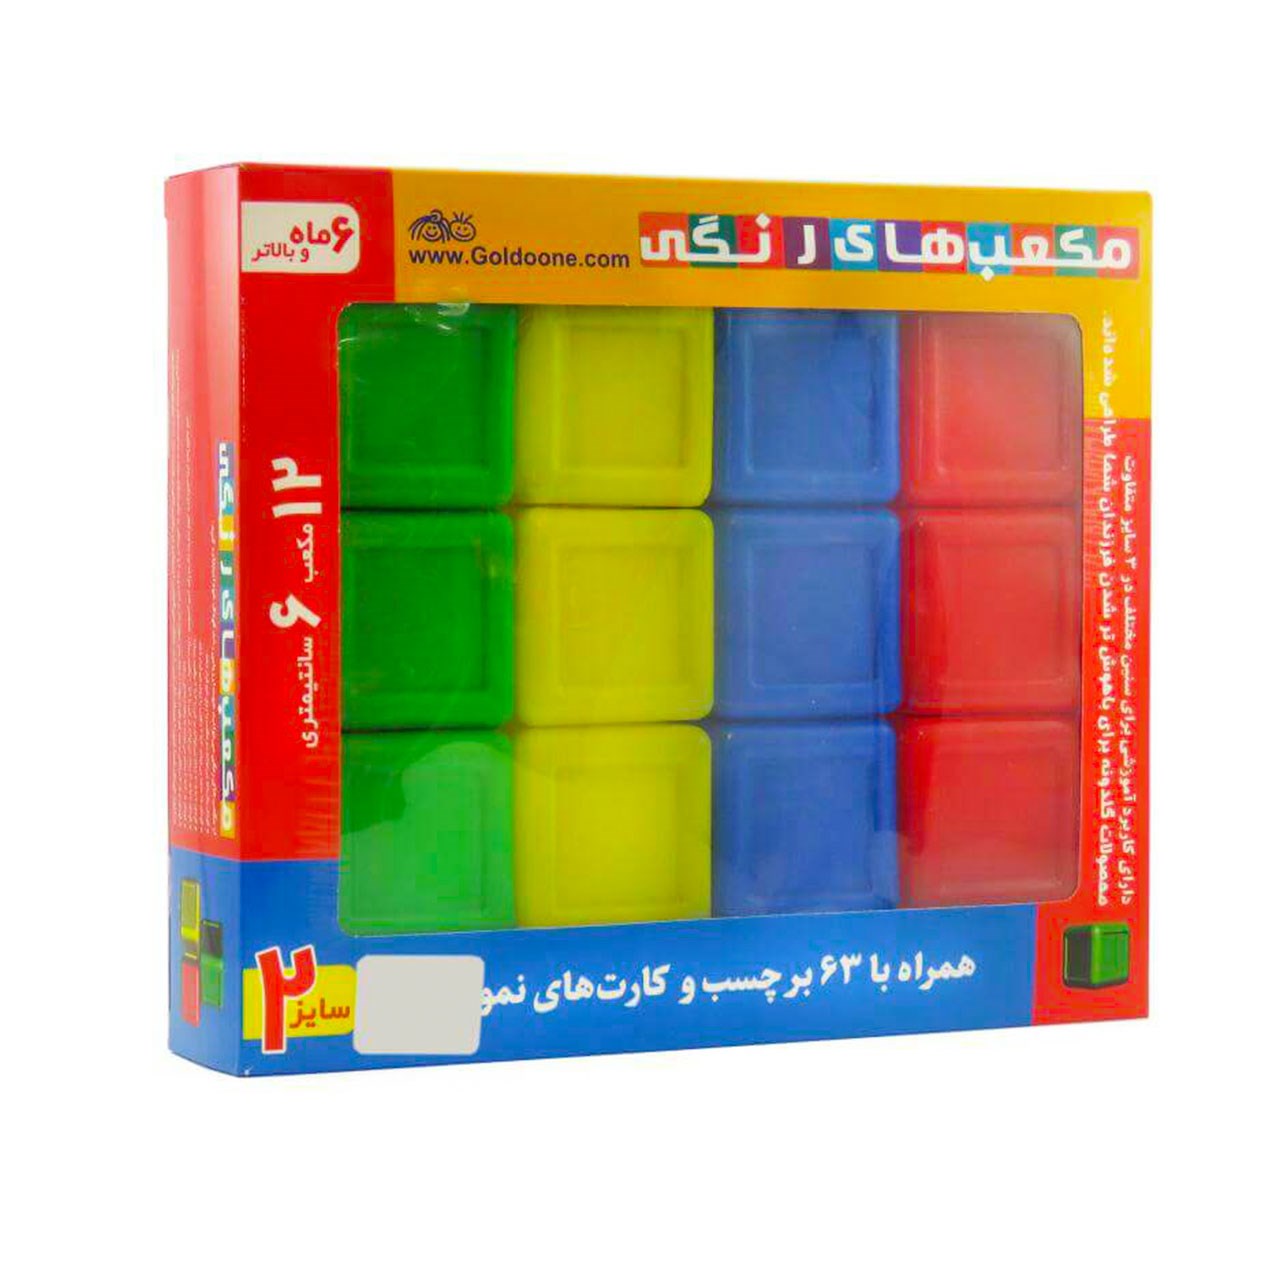 بازی آموزشی گلدونه مدل مکعب های رنگی شماره 2